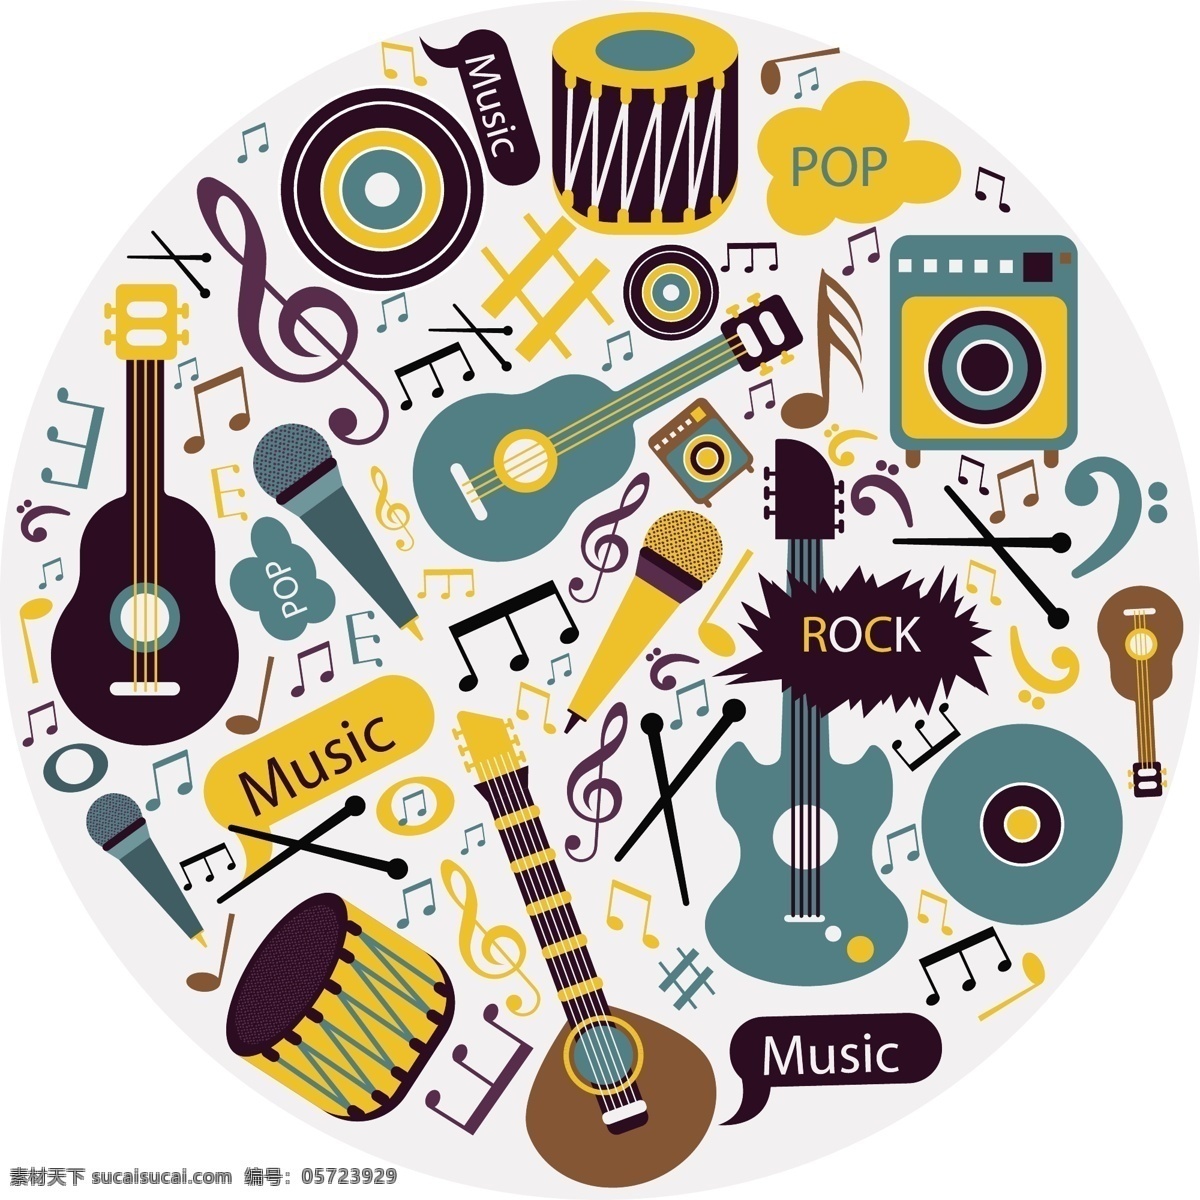 电吉他 音乐节 声音 音符 世界 和鸣 艺术 声乐 光盘 乐器贝斯 图标 icon 插画 插图 图案 印花 麦克风 鼓 文化艺术